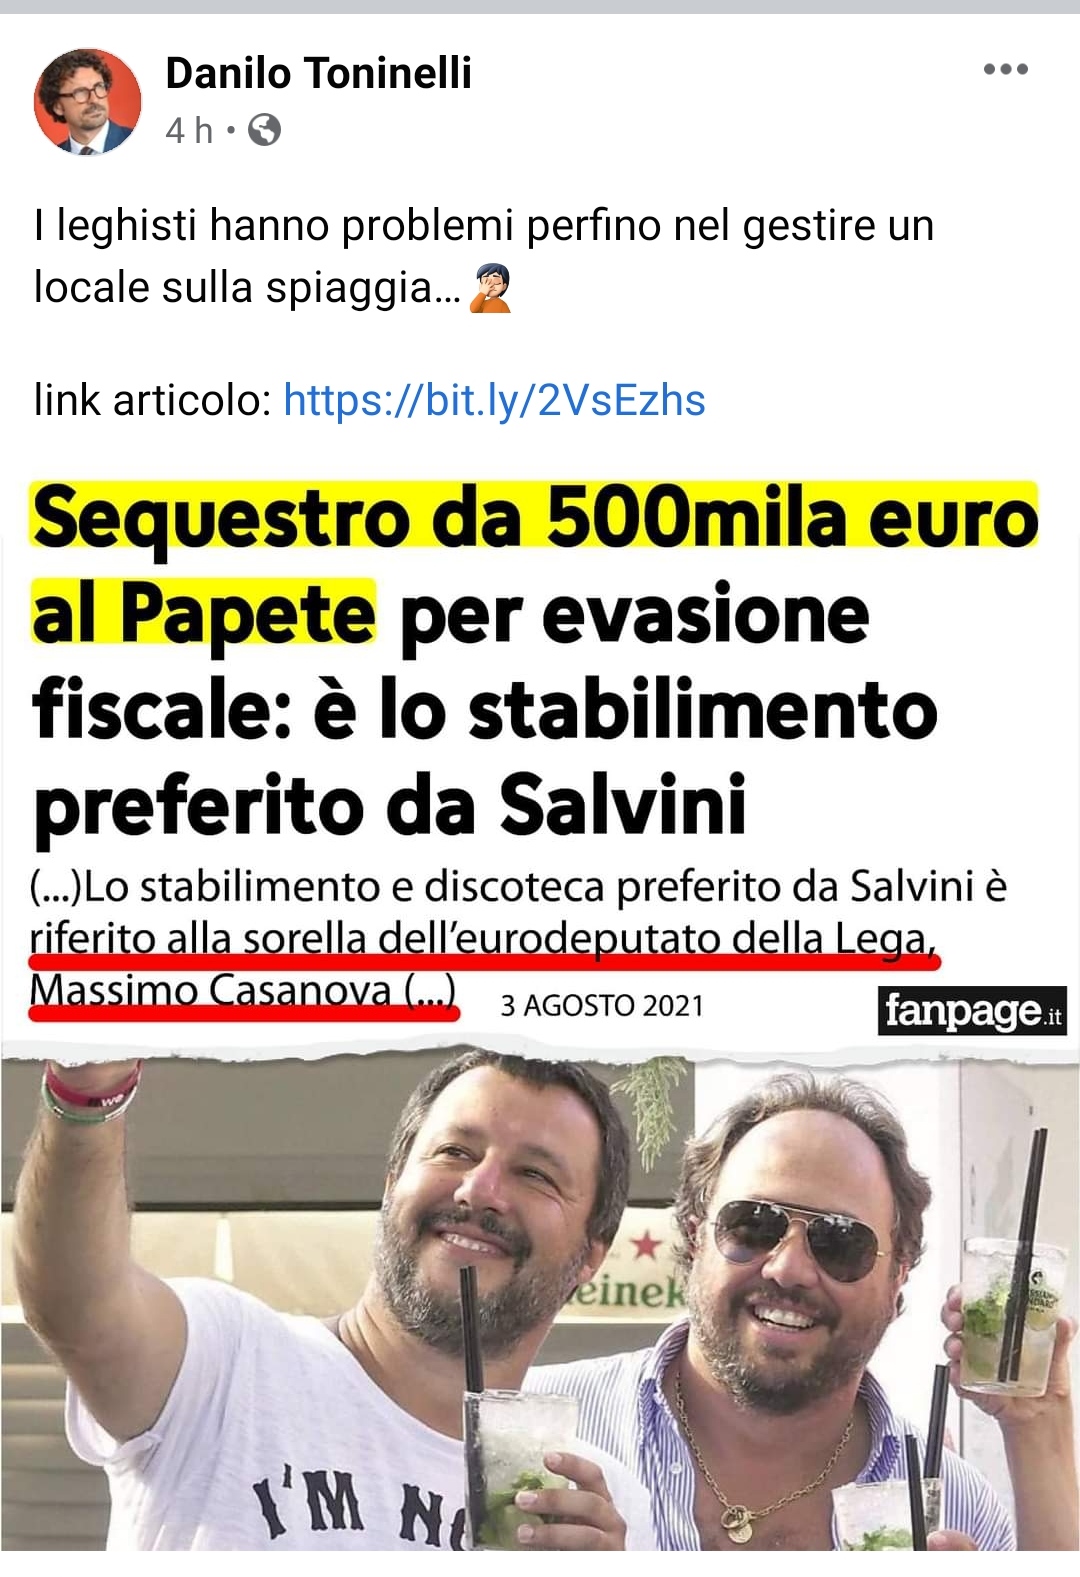 Ah che Finestra sul Mondo il Toninelli Danilo che attacca il locale preferito dal Salvini Matteo, no? 